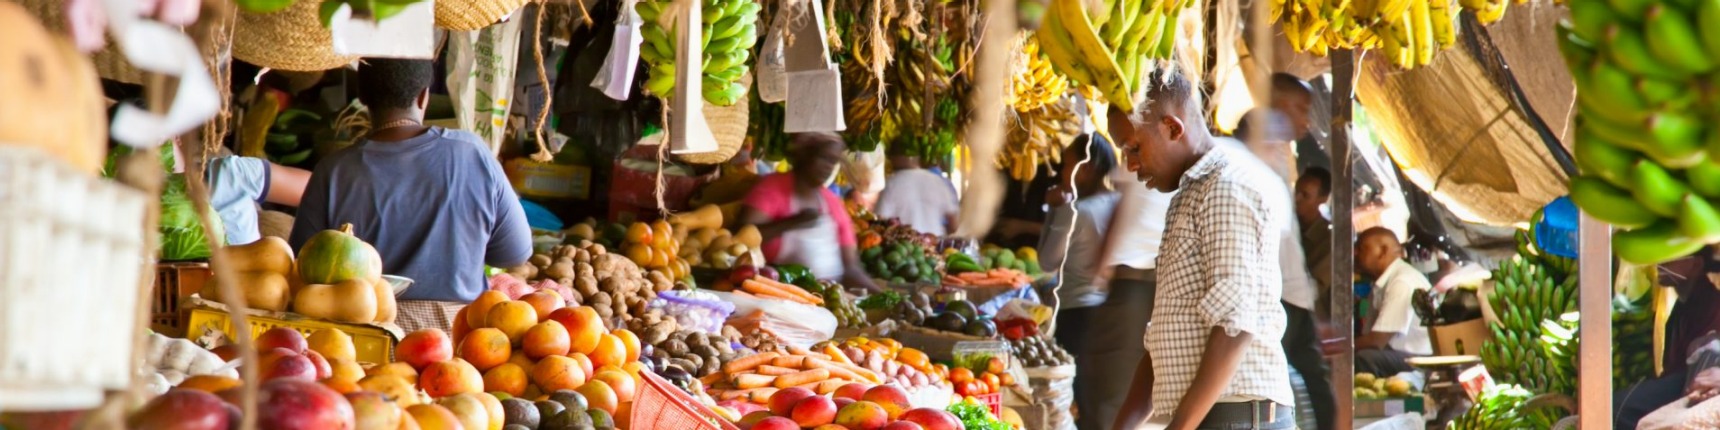 Kenya, marketplace